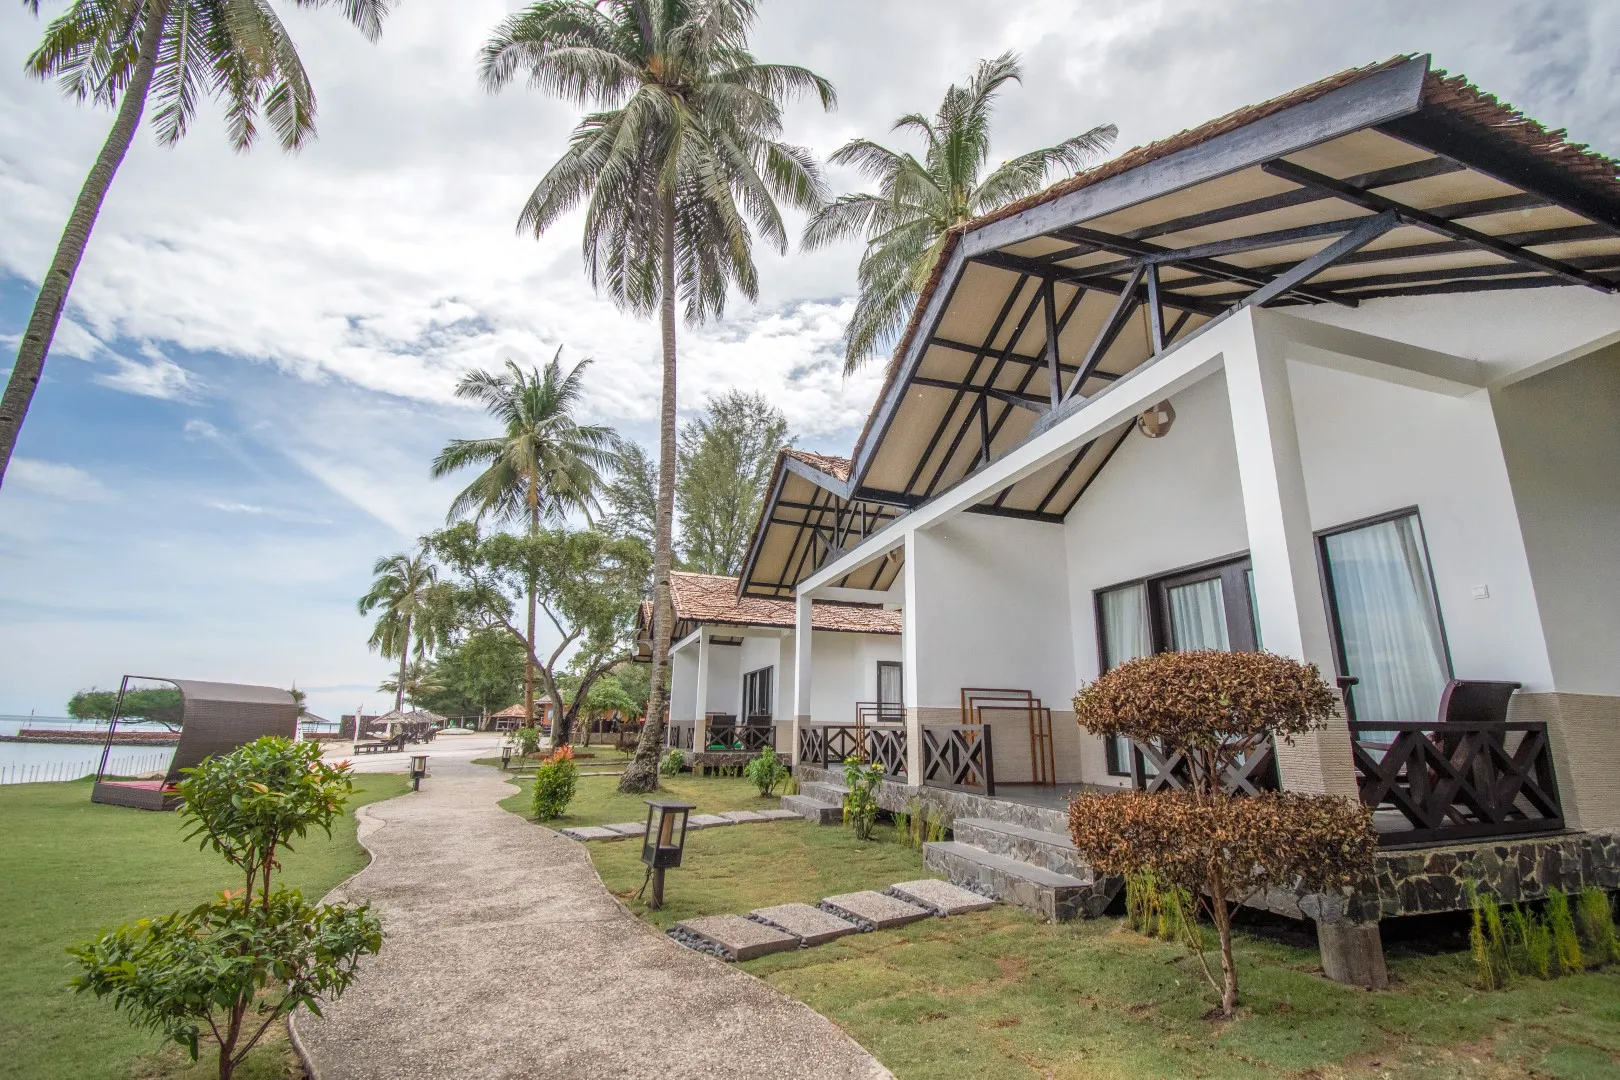 Bintan | Bintan Spa Villa Beach Resort + Ferry  2-Way Ferry + Land Transfer + Breakfast